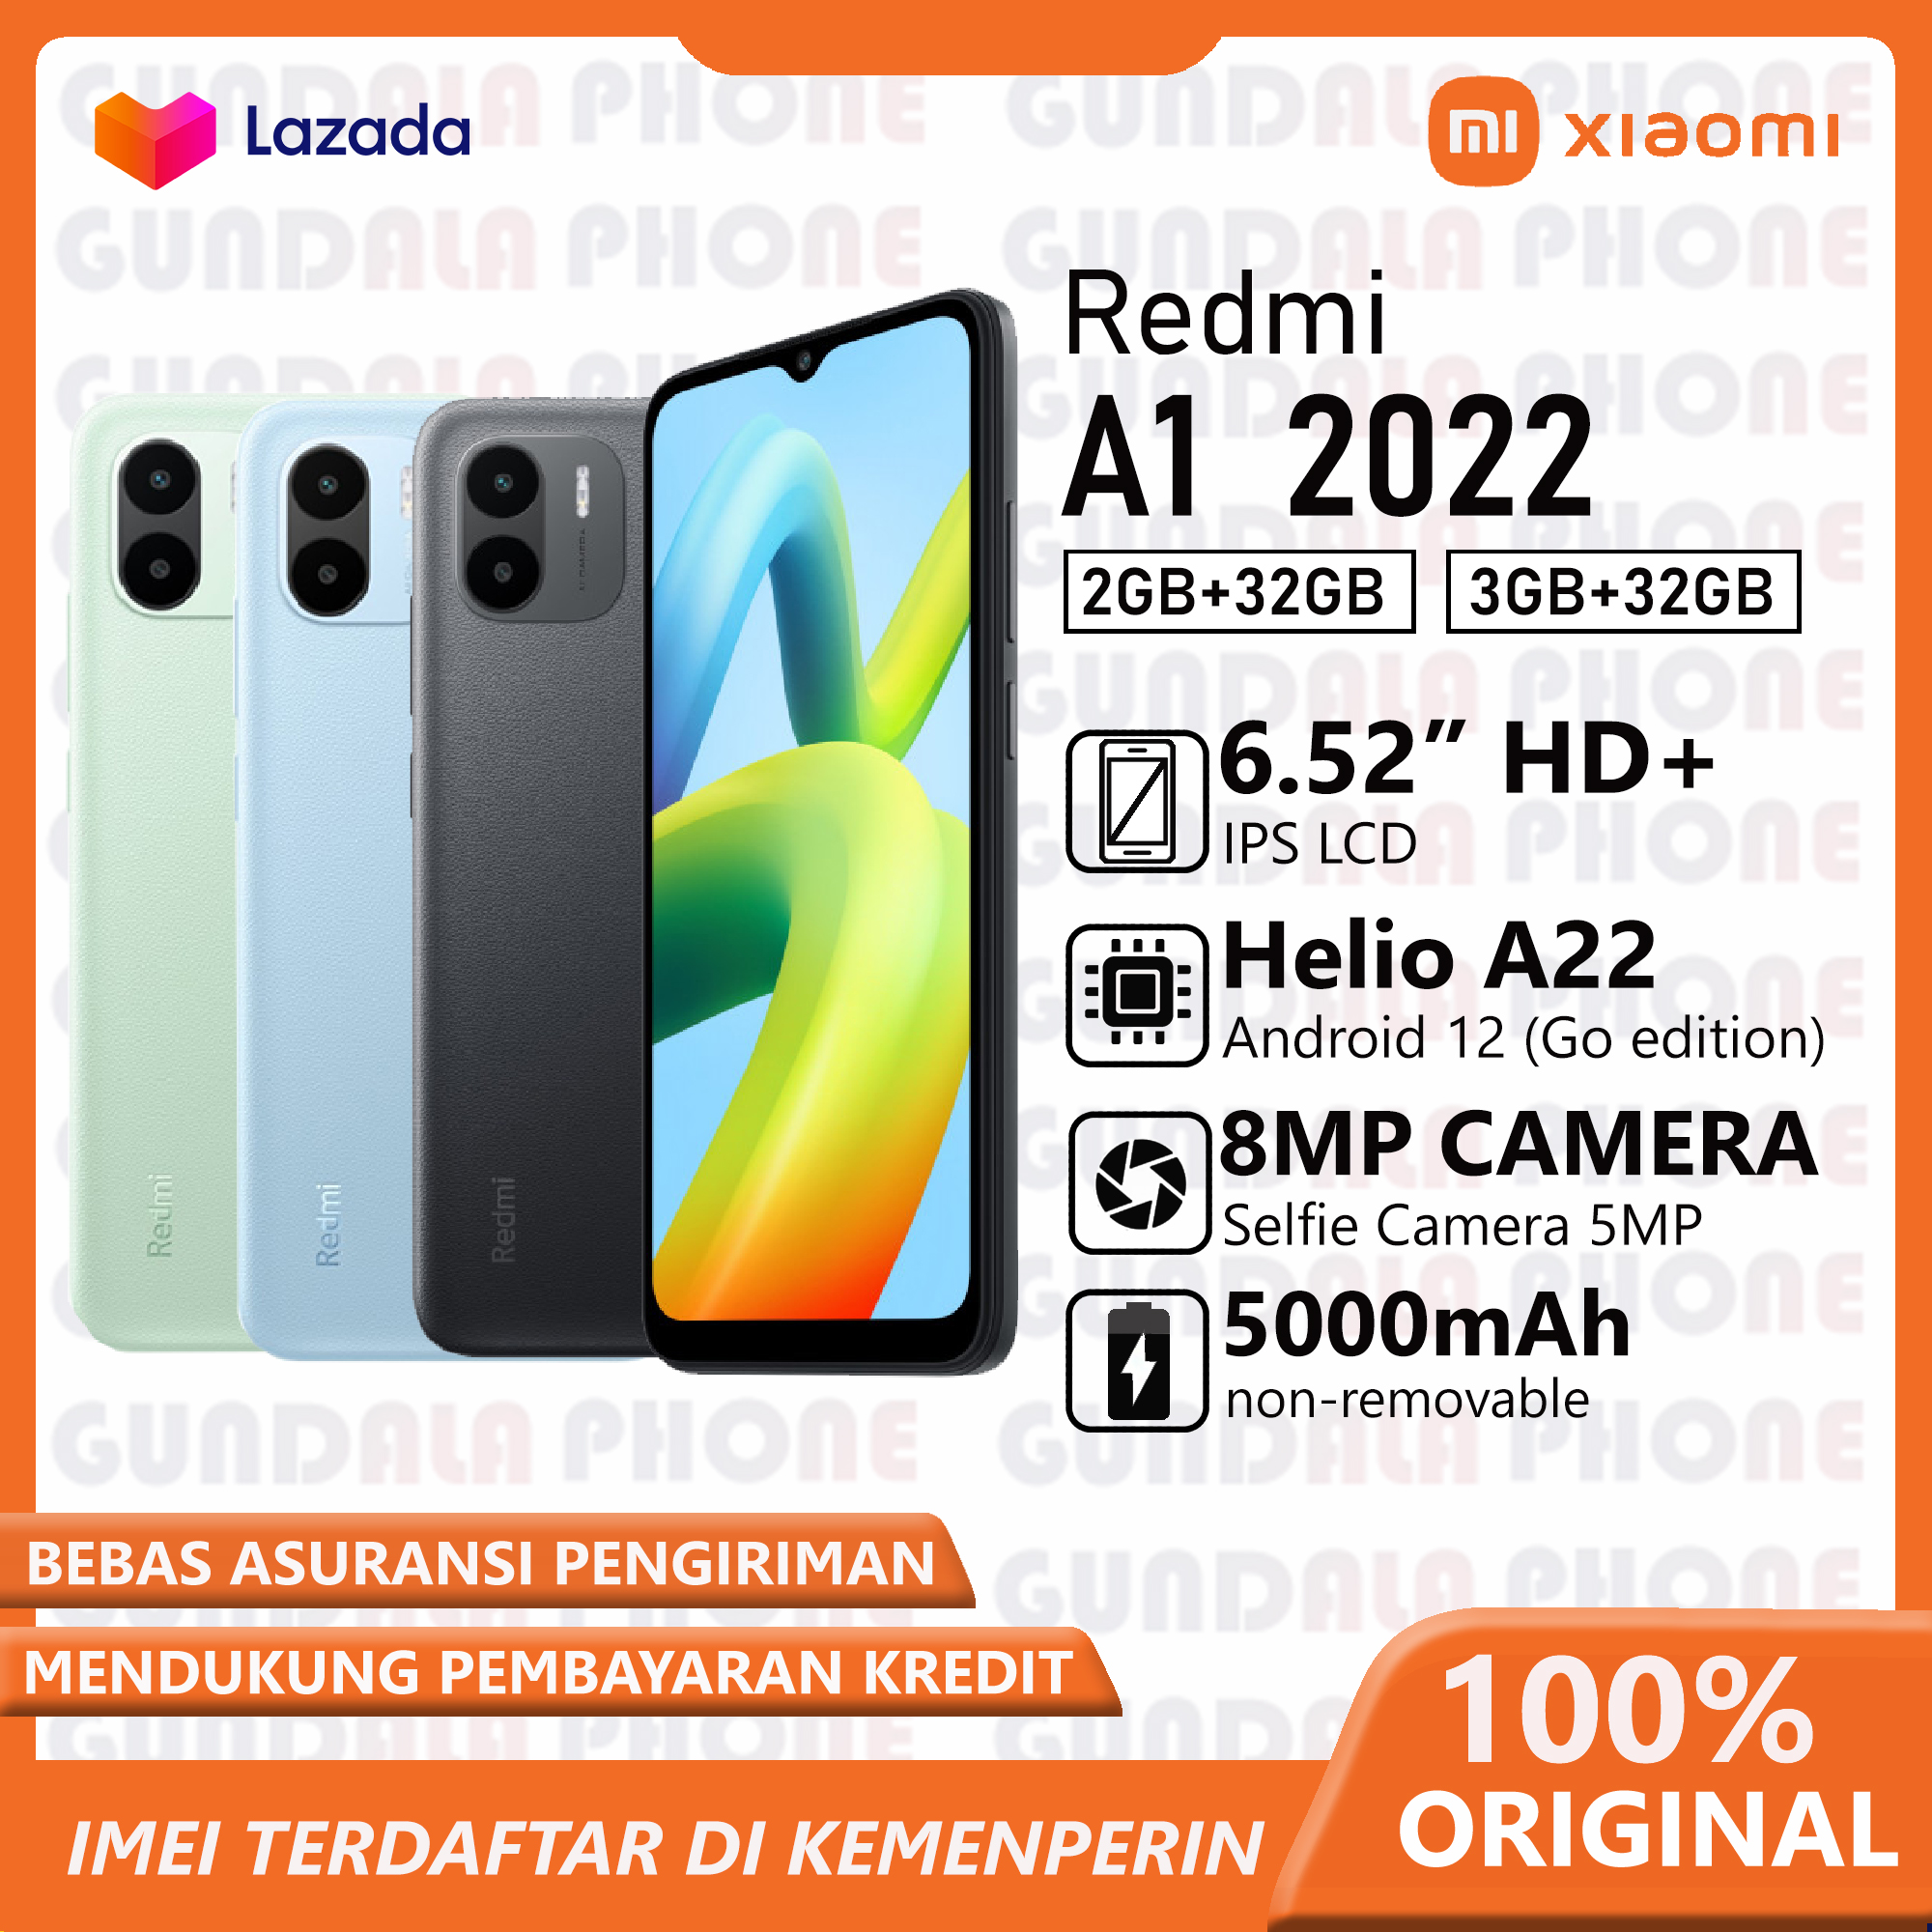  daftar harga dan spesifikasi hp android	 Xiaomi Redmi A1 Mediatek Helio A22 Garansi Resmi 	